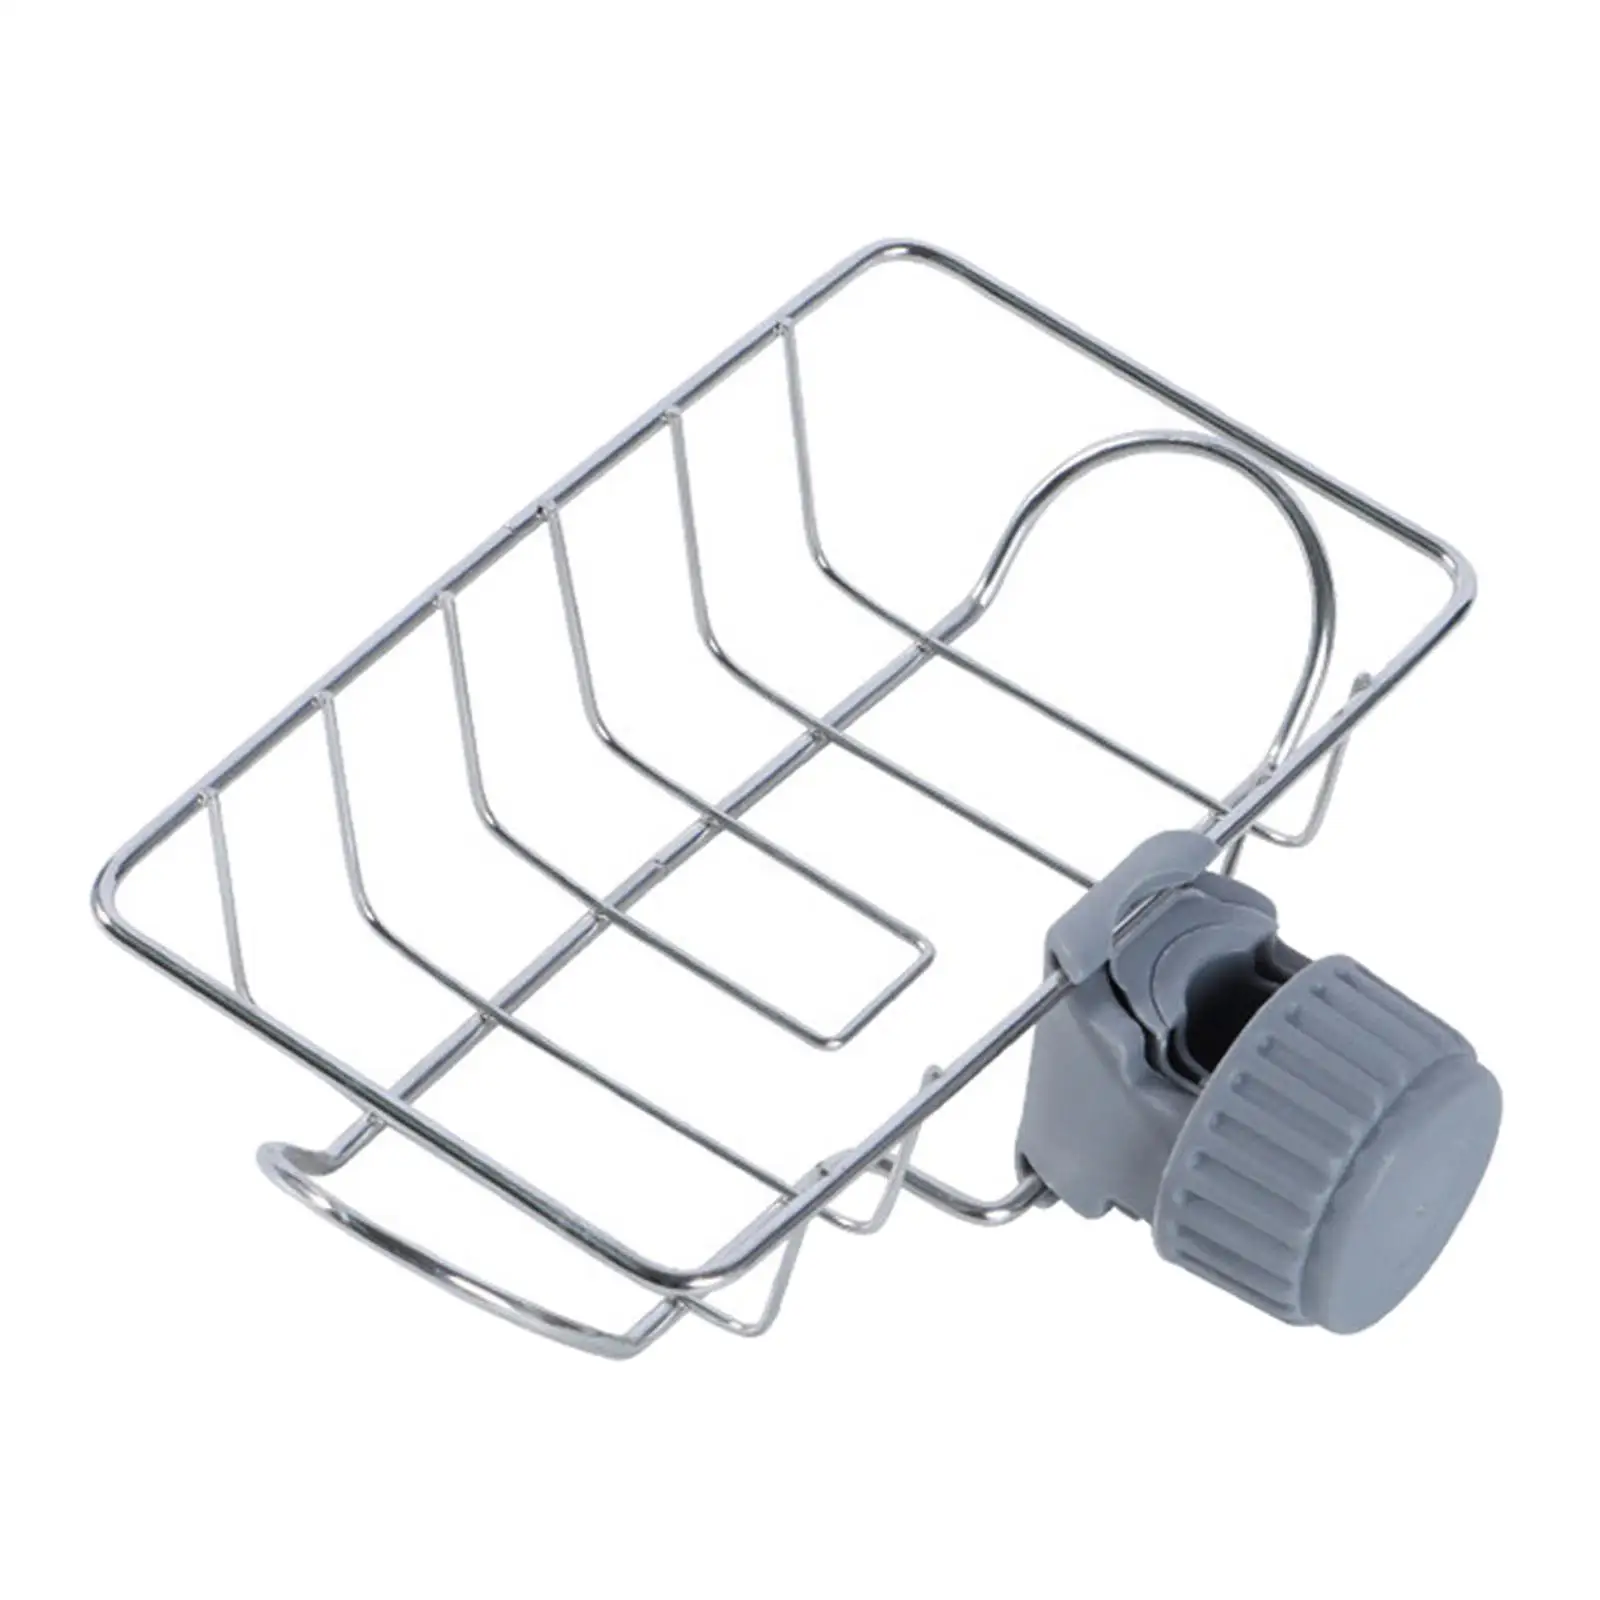 Canopy Pole Storage Basket Vegetables Organizer Soap Drainer Shelf Sink Sponge Holder for Kitchen Camping Tent Bathroom